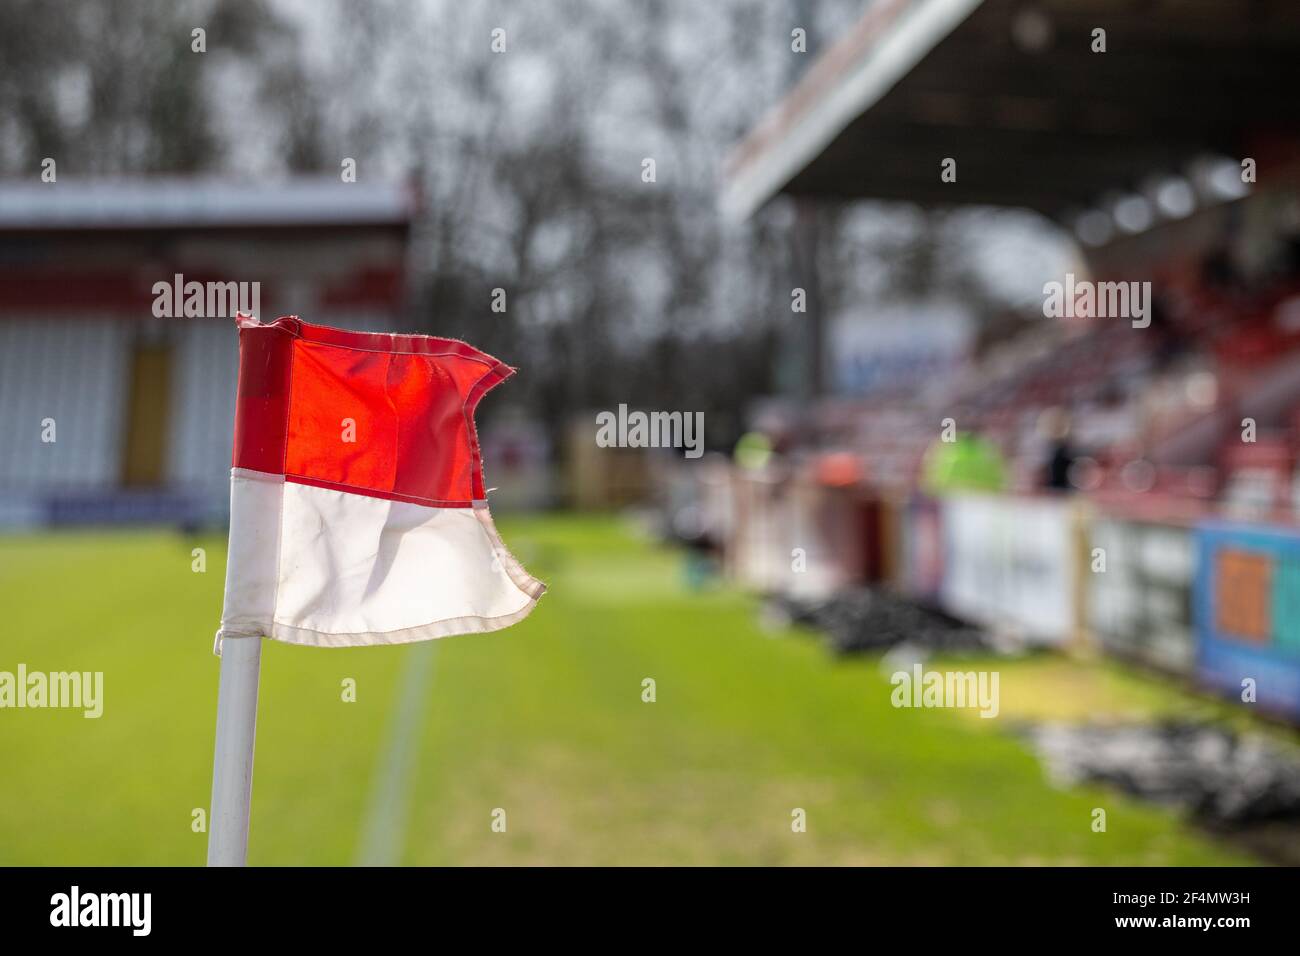 Nahaufnahme der Eckflagge auf dem Fußballplatz unten ligastadion Stockfoto